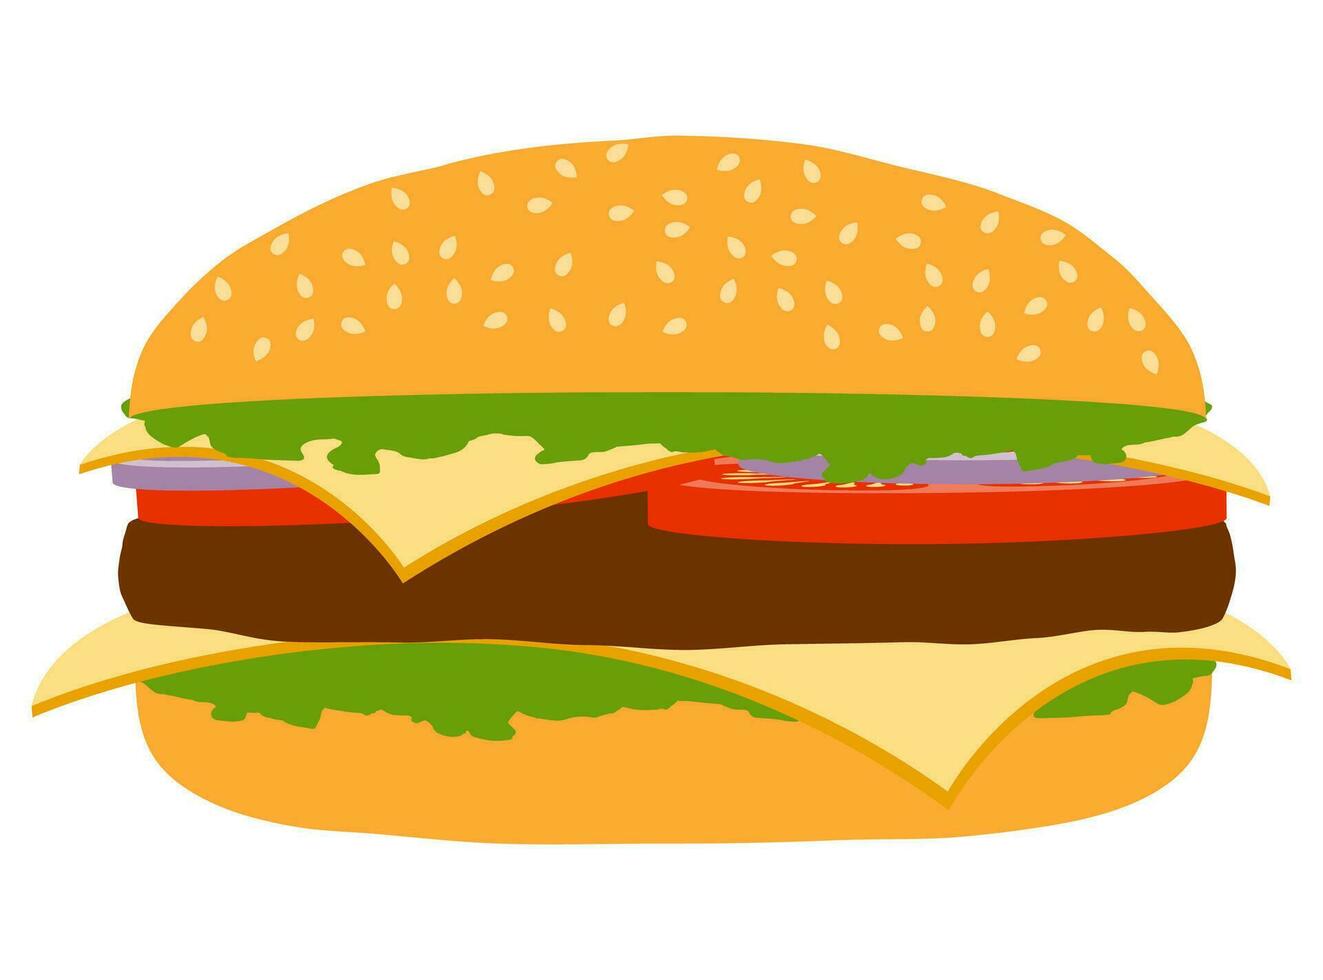 klassischer Hamburger mit Fleisch hacken Tomatenzwiebel und Käse in einer Brötchenvorrat-Vektorillustration lokalisiert auf weißem Hintergrund vektor